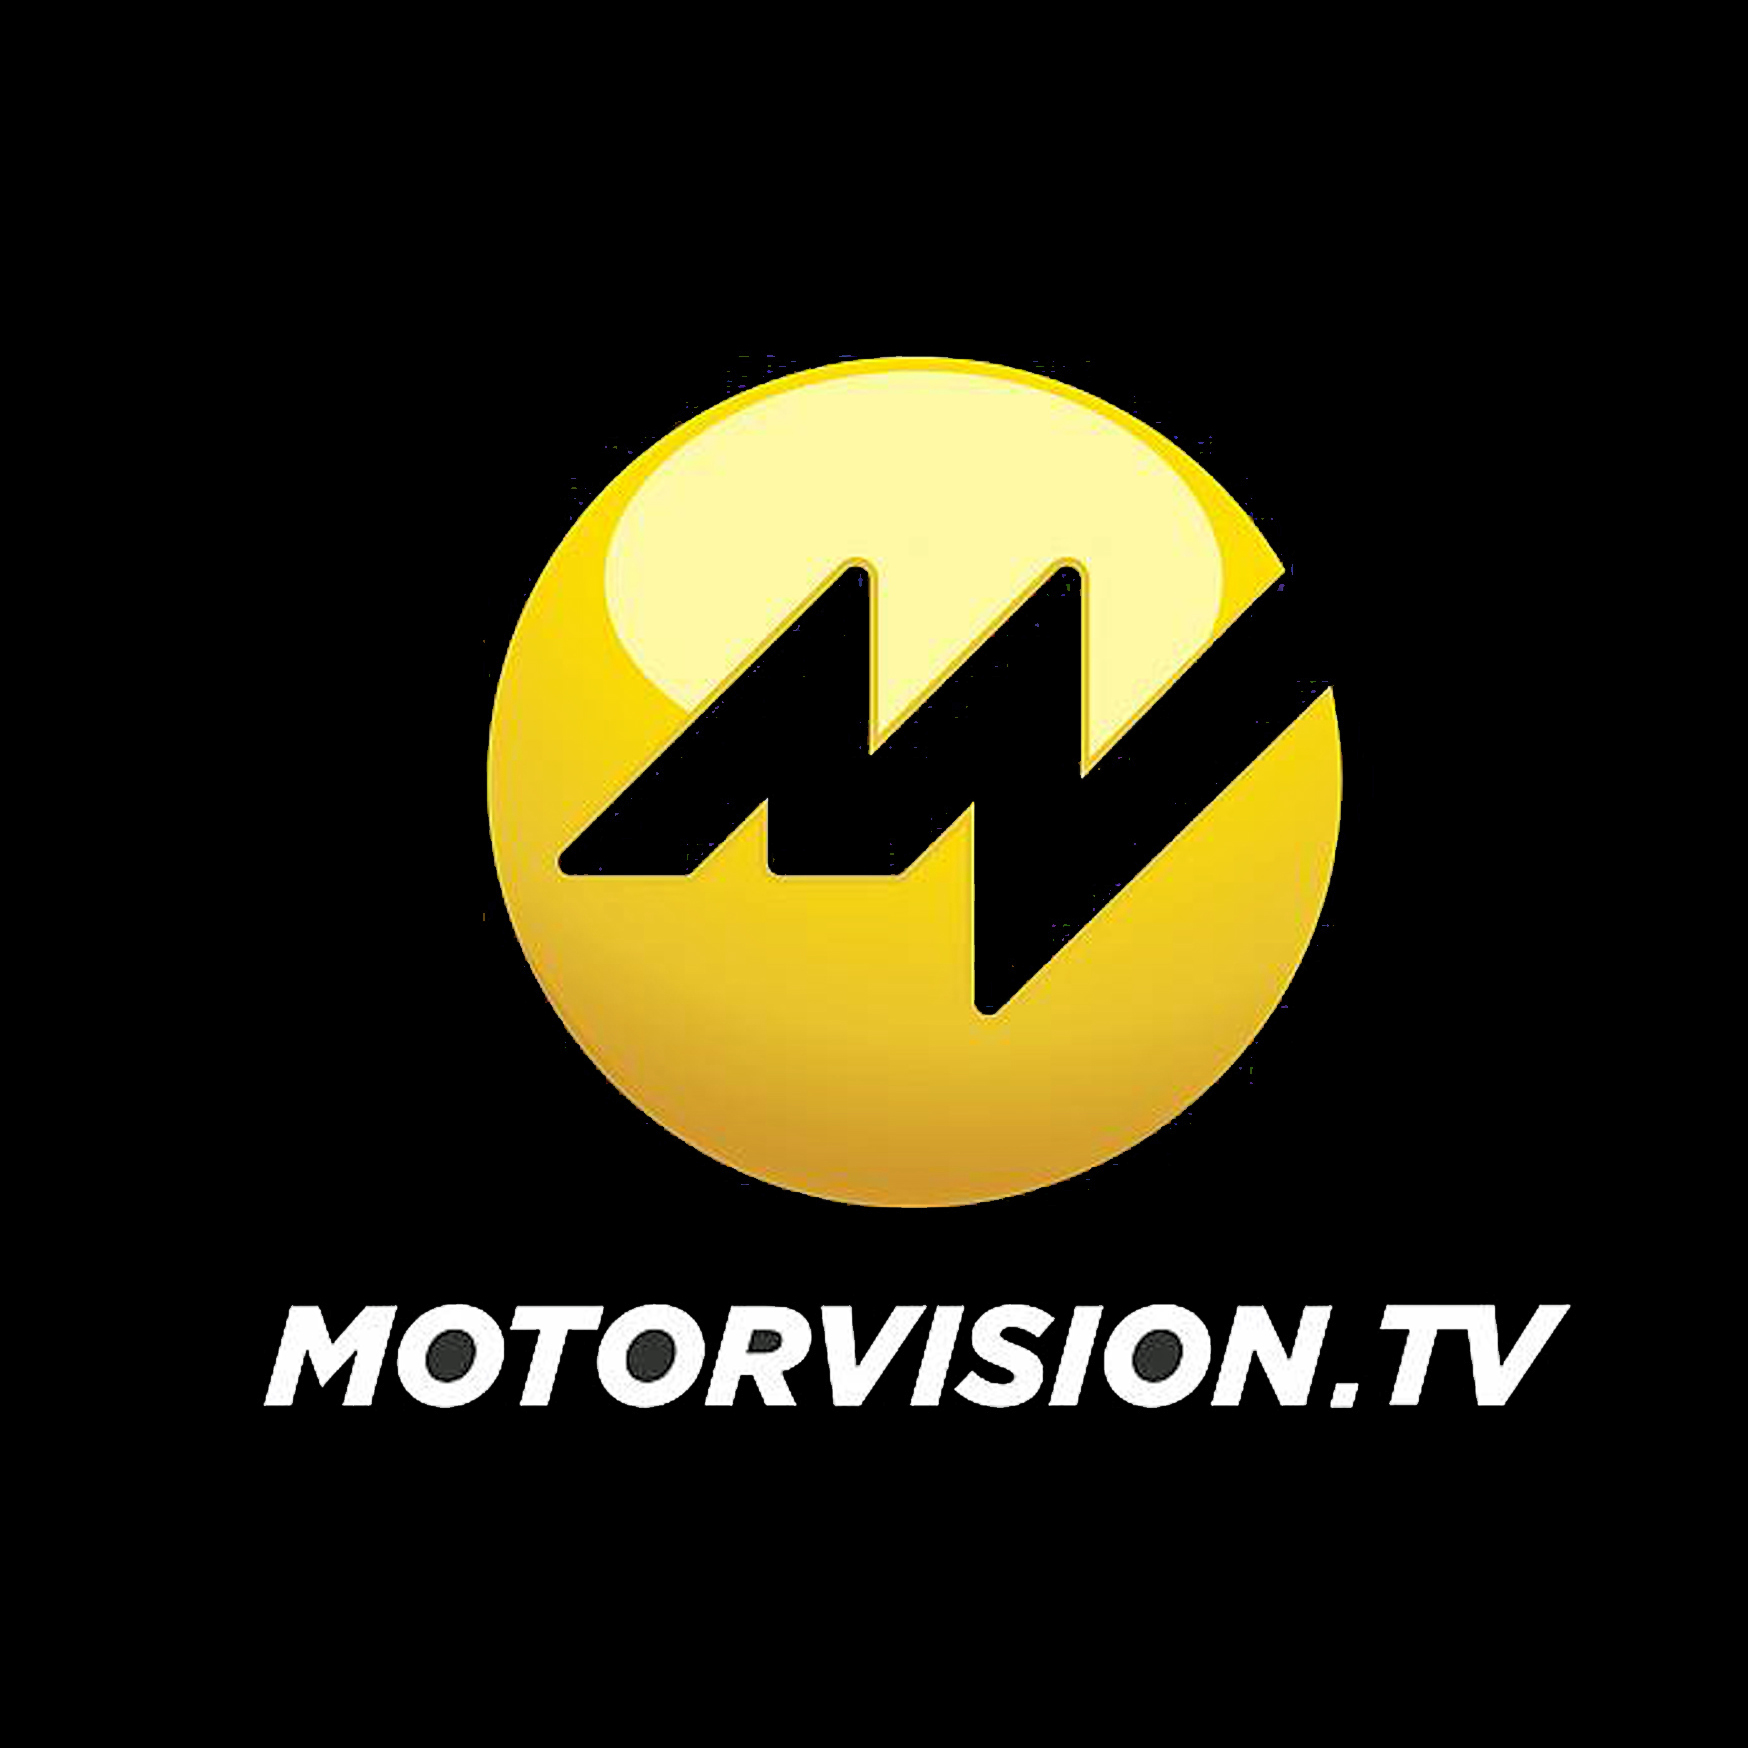 Profilo Motorvision TV Canale Tv